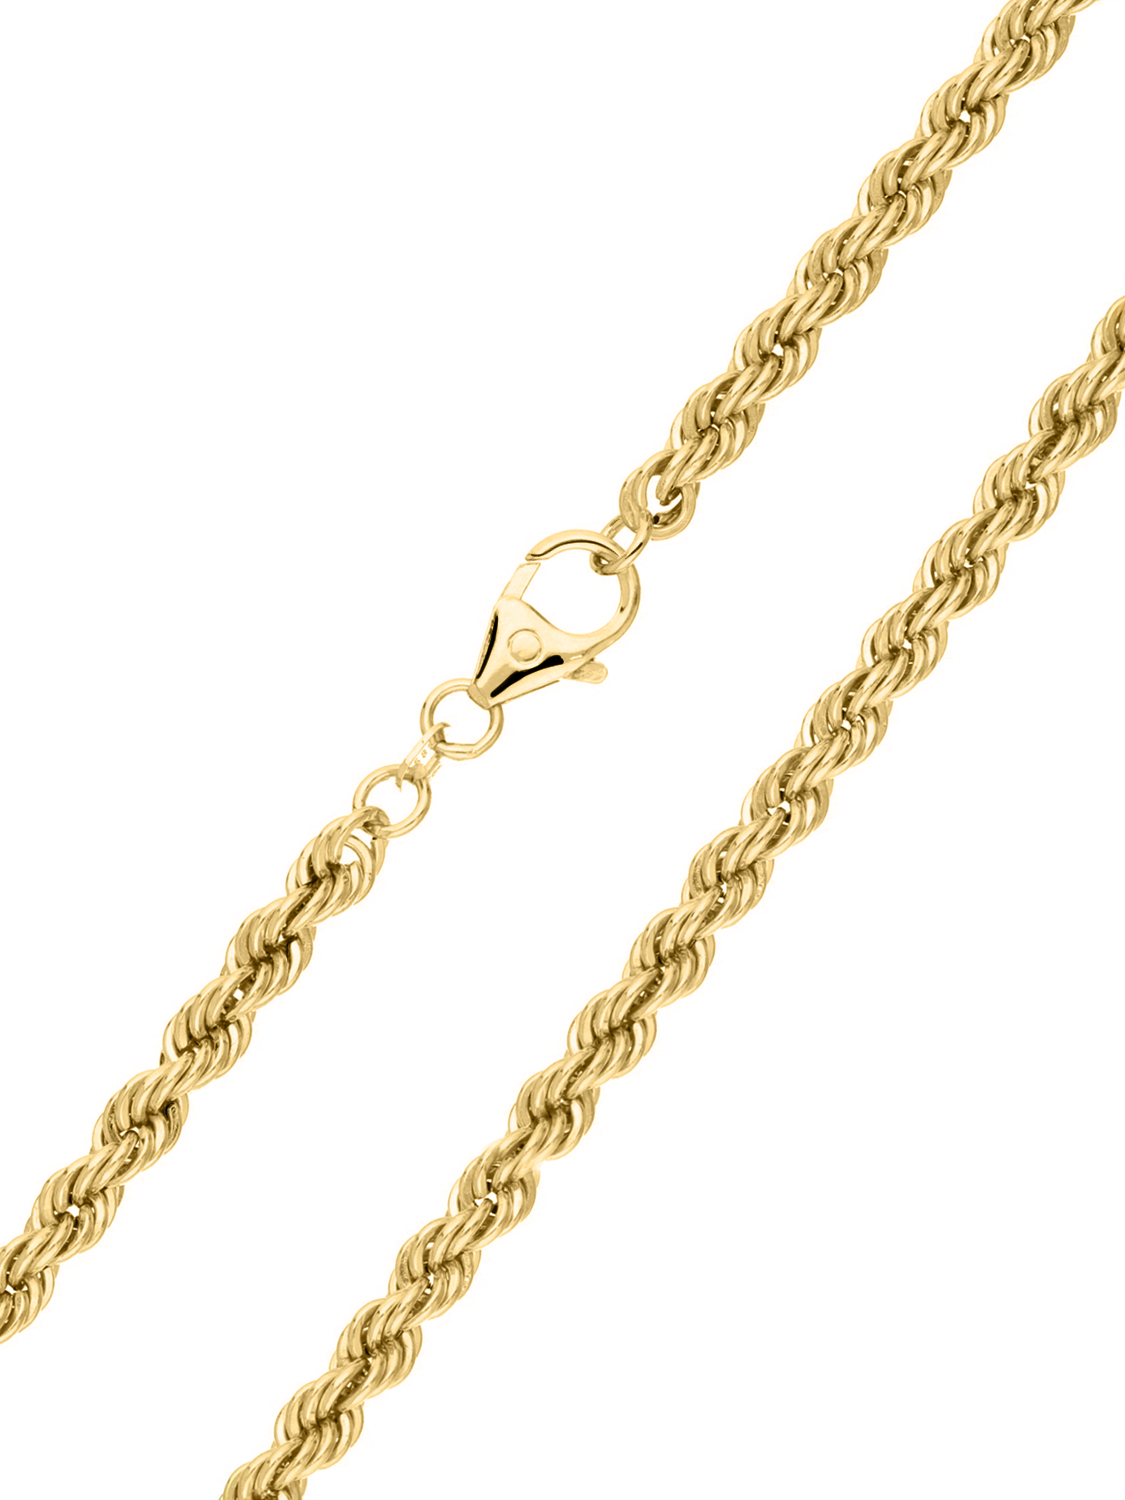 Lavflame - Halskette 585 Gold - 42cm